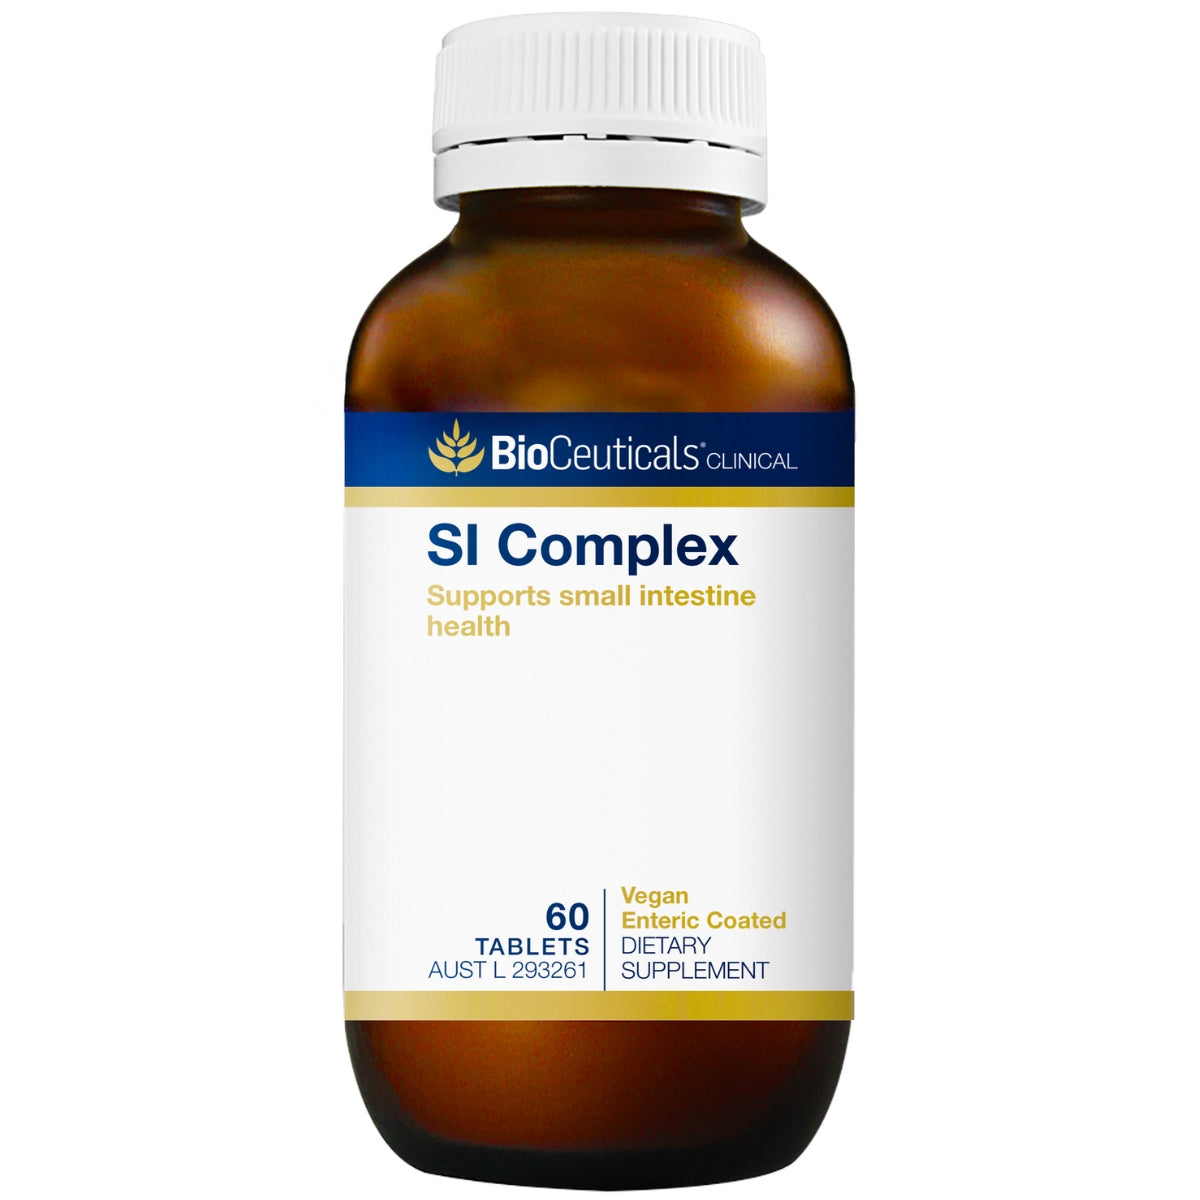 BioCeuticals Clinical SI Complex